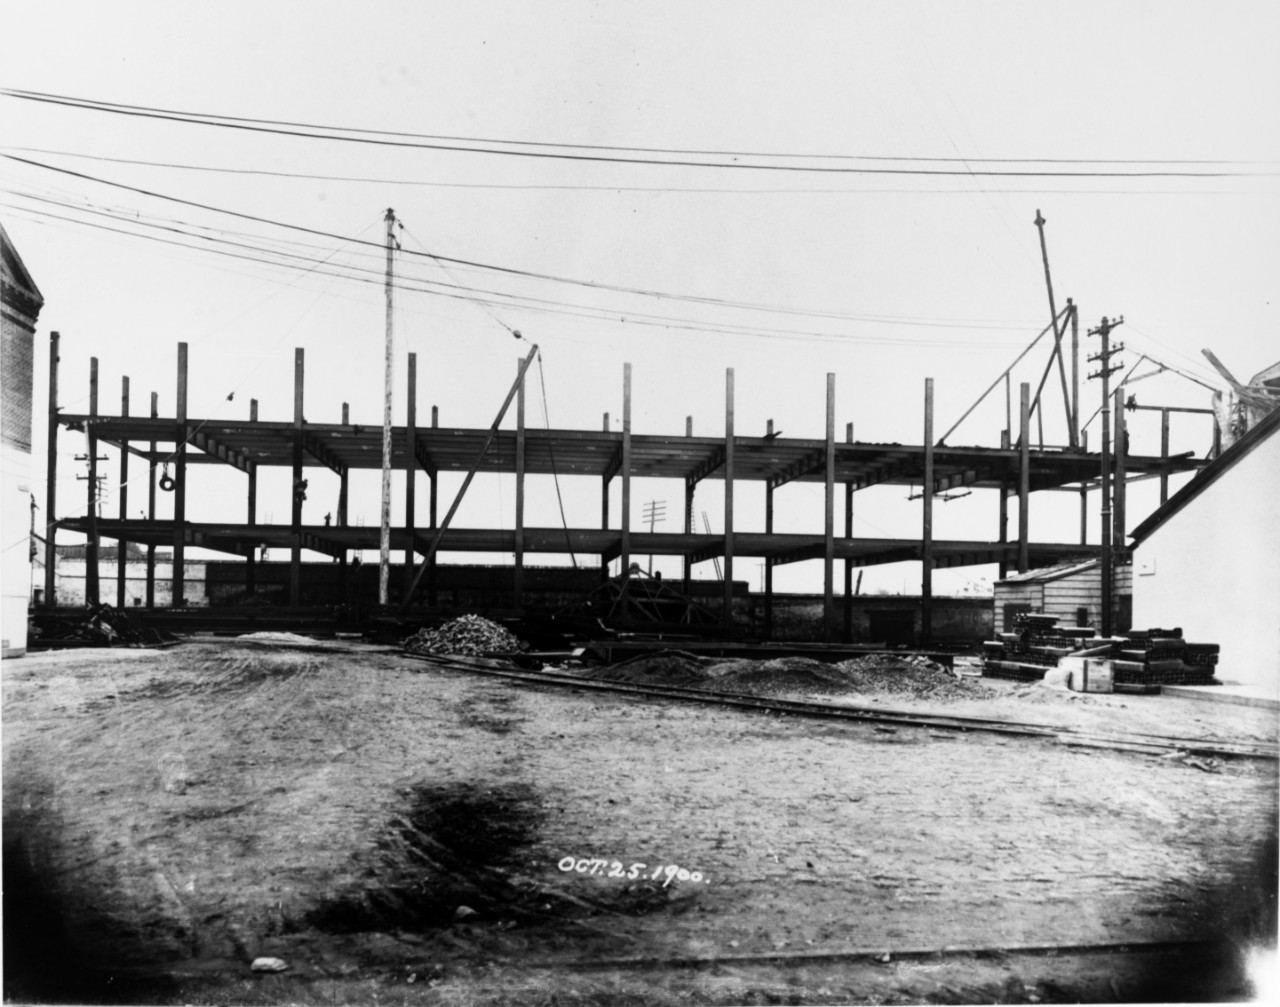 Building 101, Washington Navy Yard